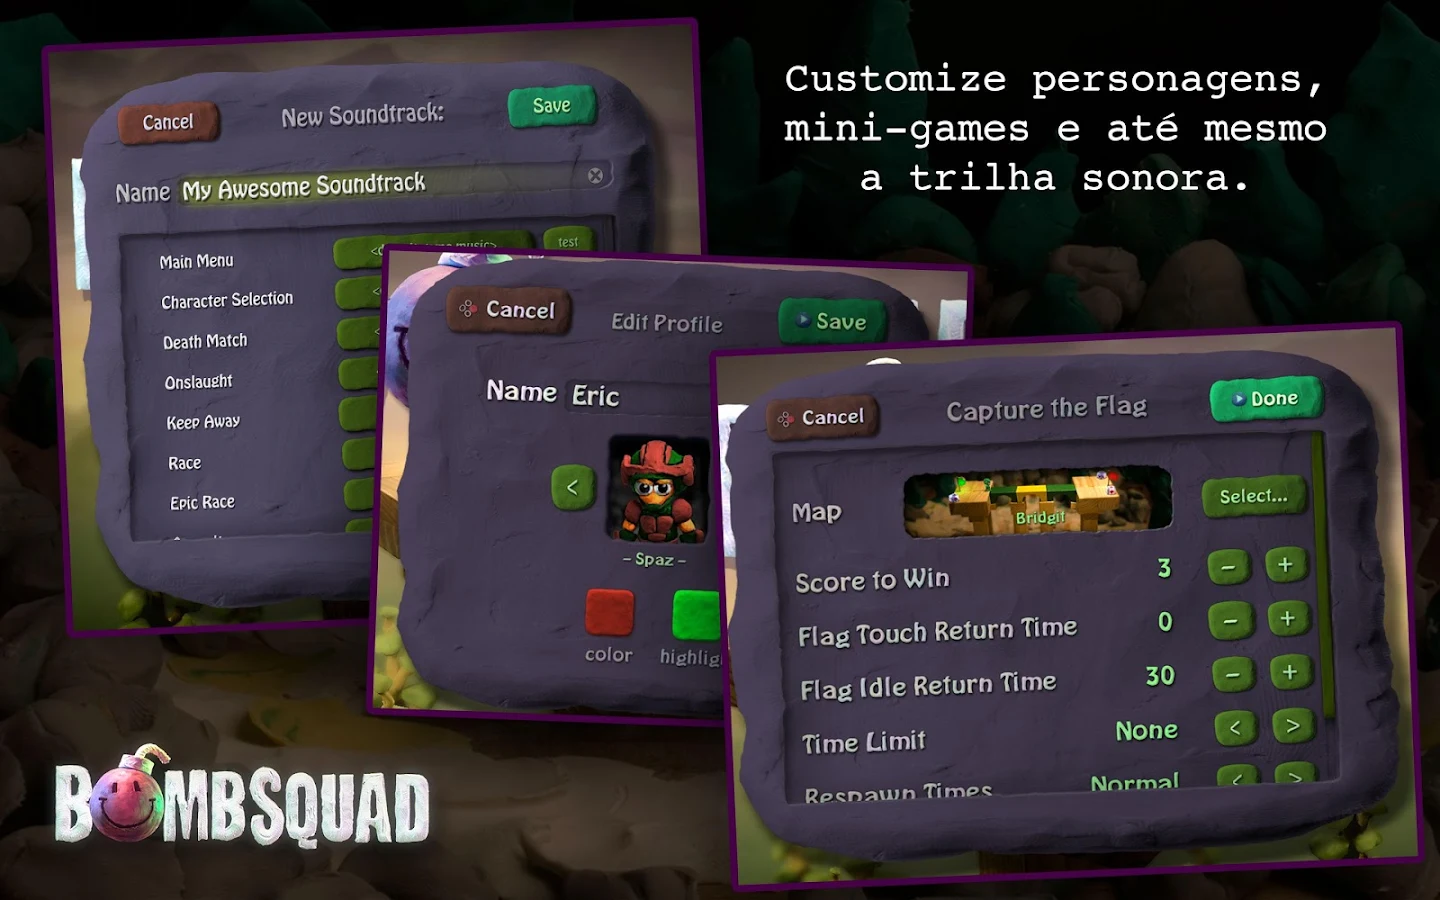 Bombsquad - Screenshot